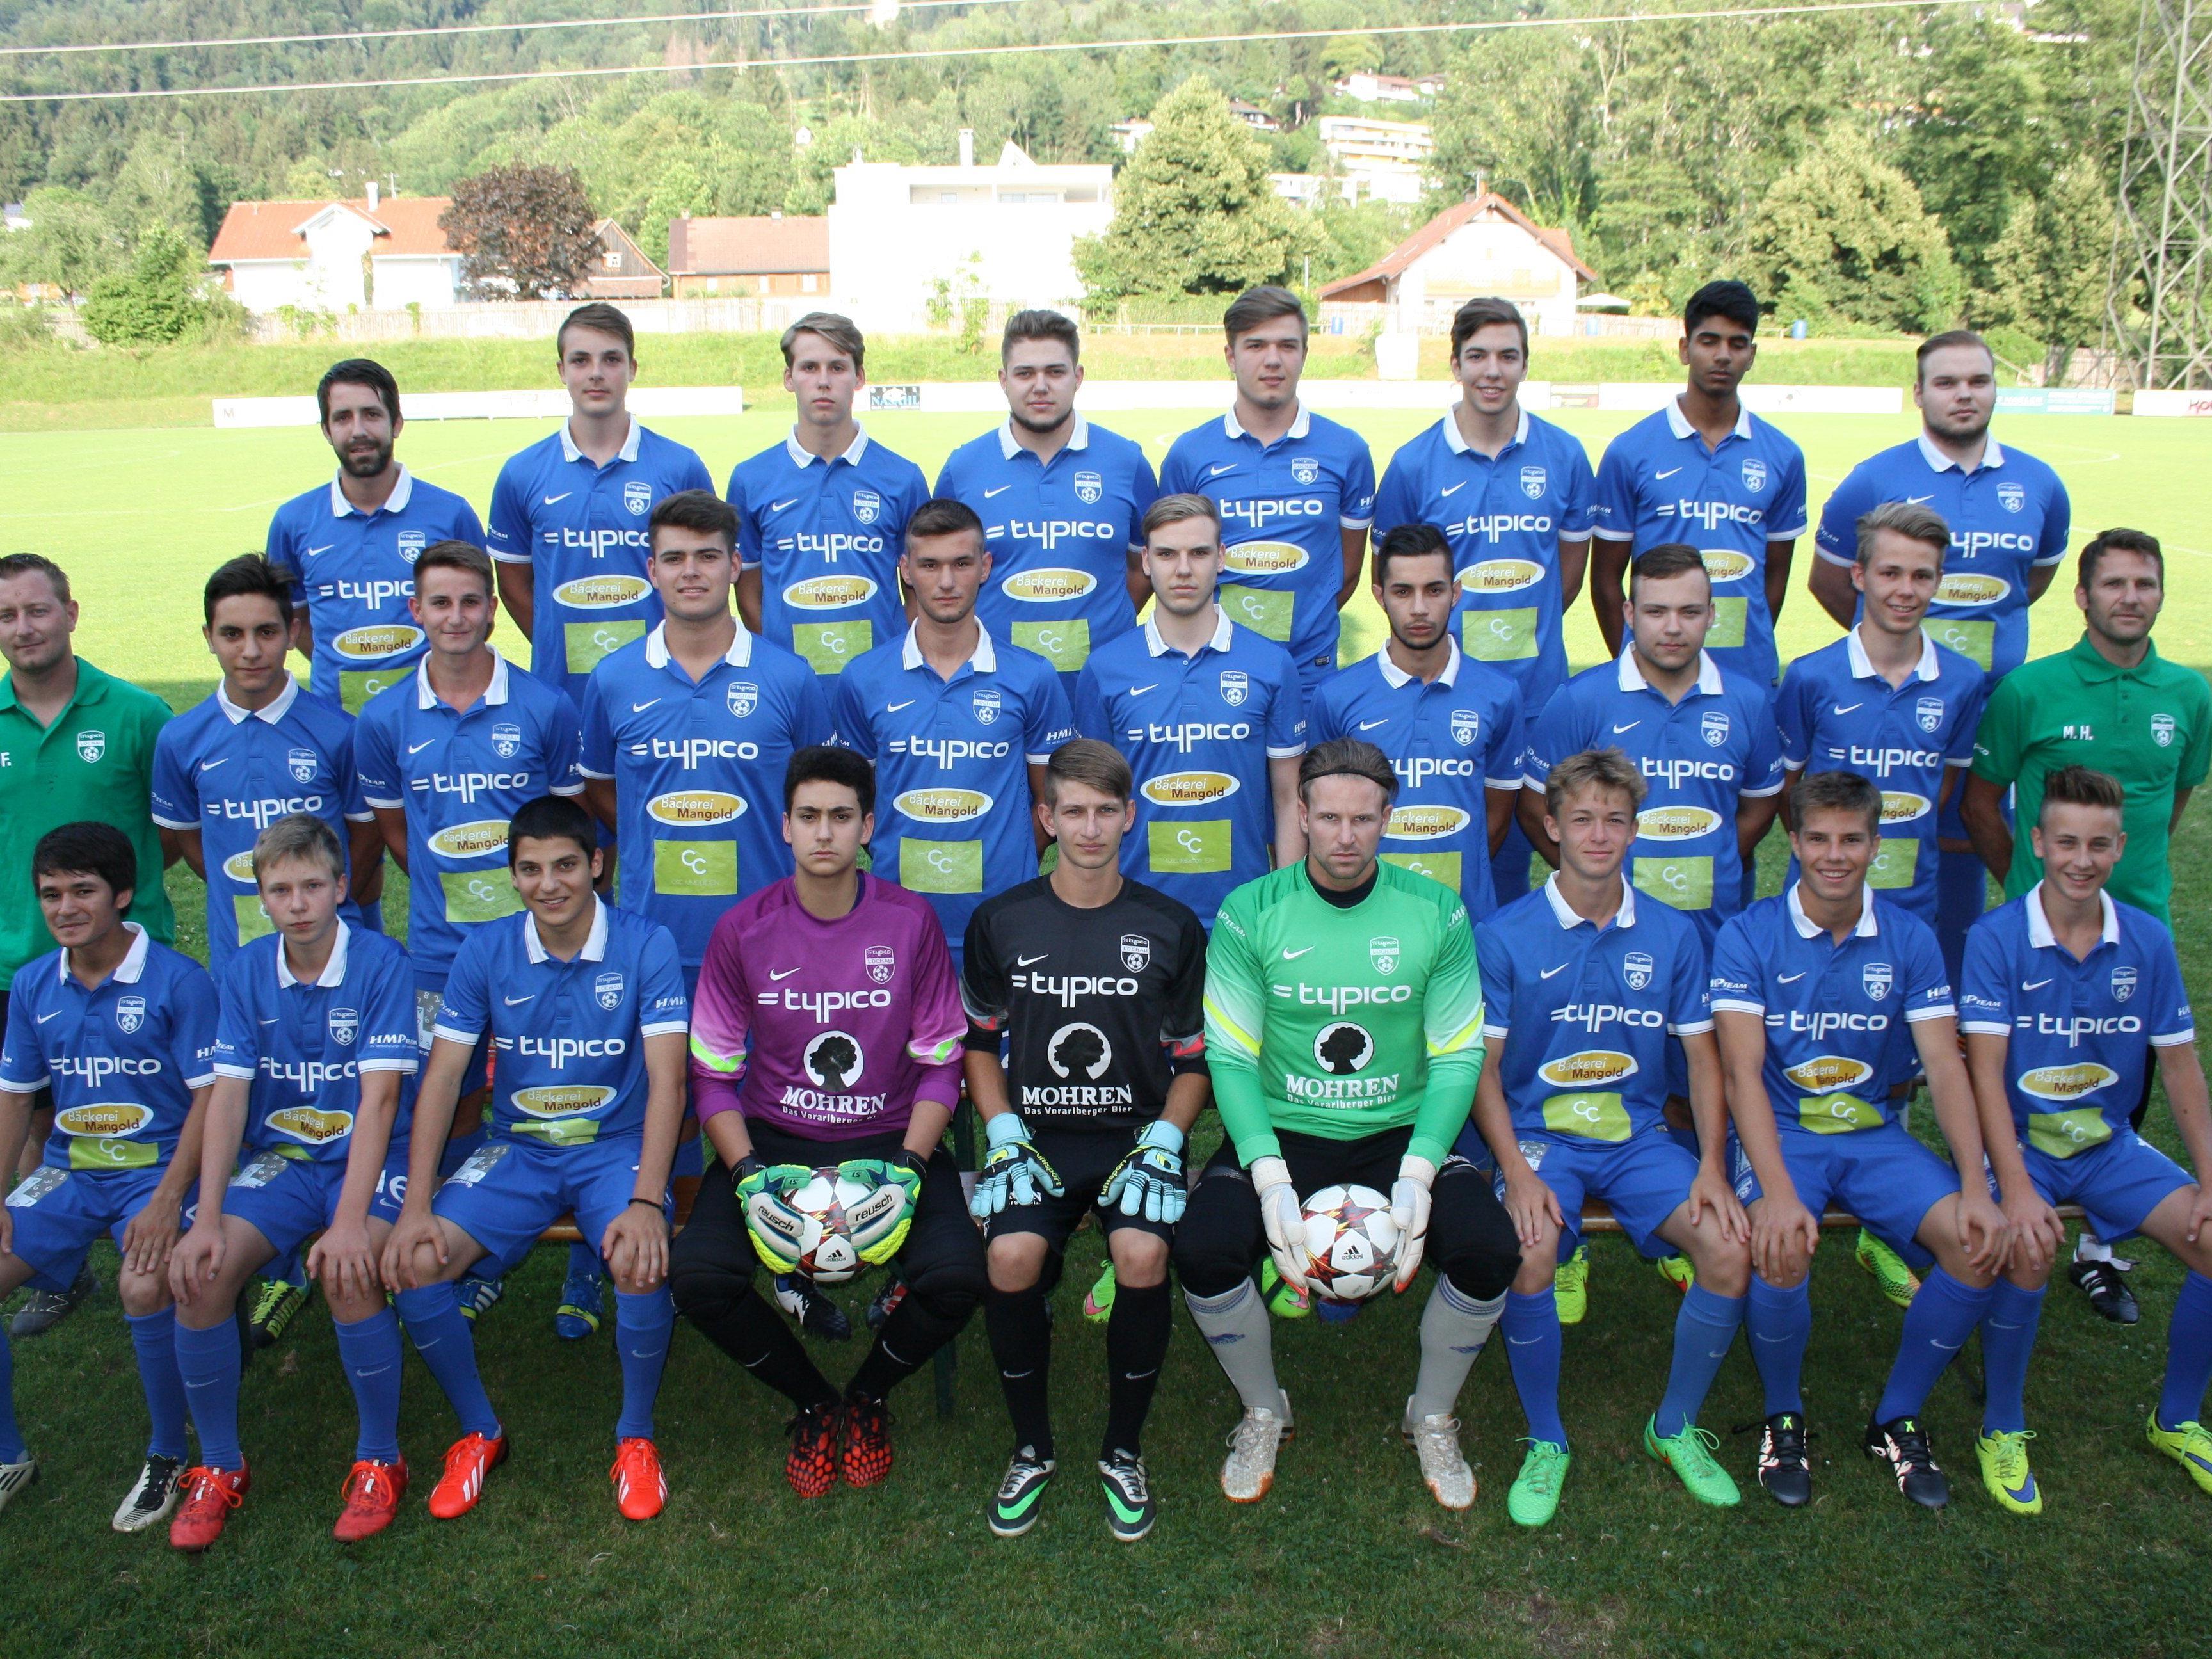 Der Kader des erfolgreichen 1b-Teams des SV Typico Lochau für die Spielsaison 2015/16 – nach vier Runden Tabellenführer in der 3. Landesklasse